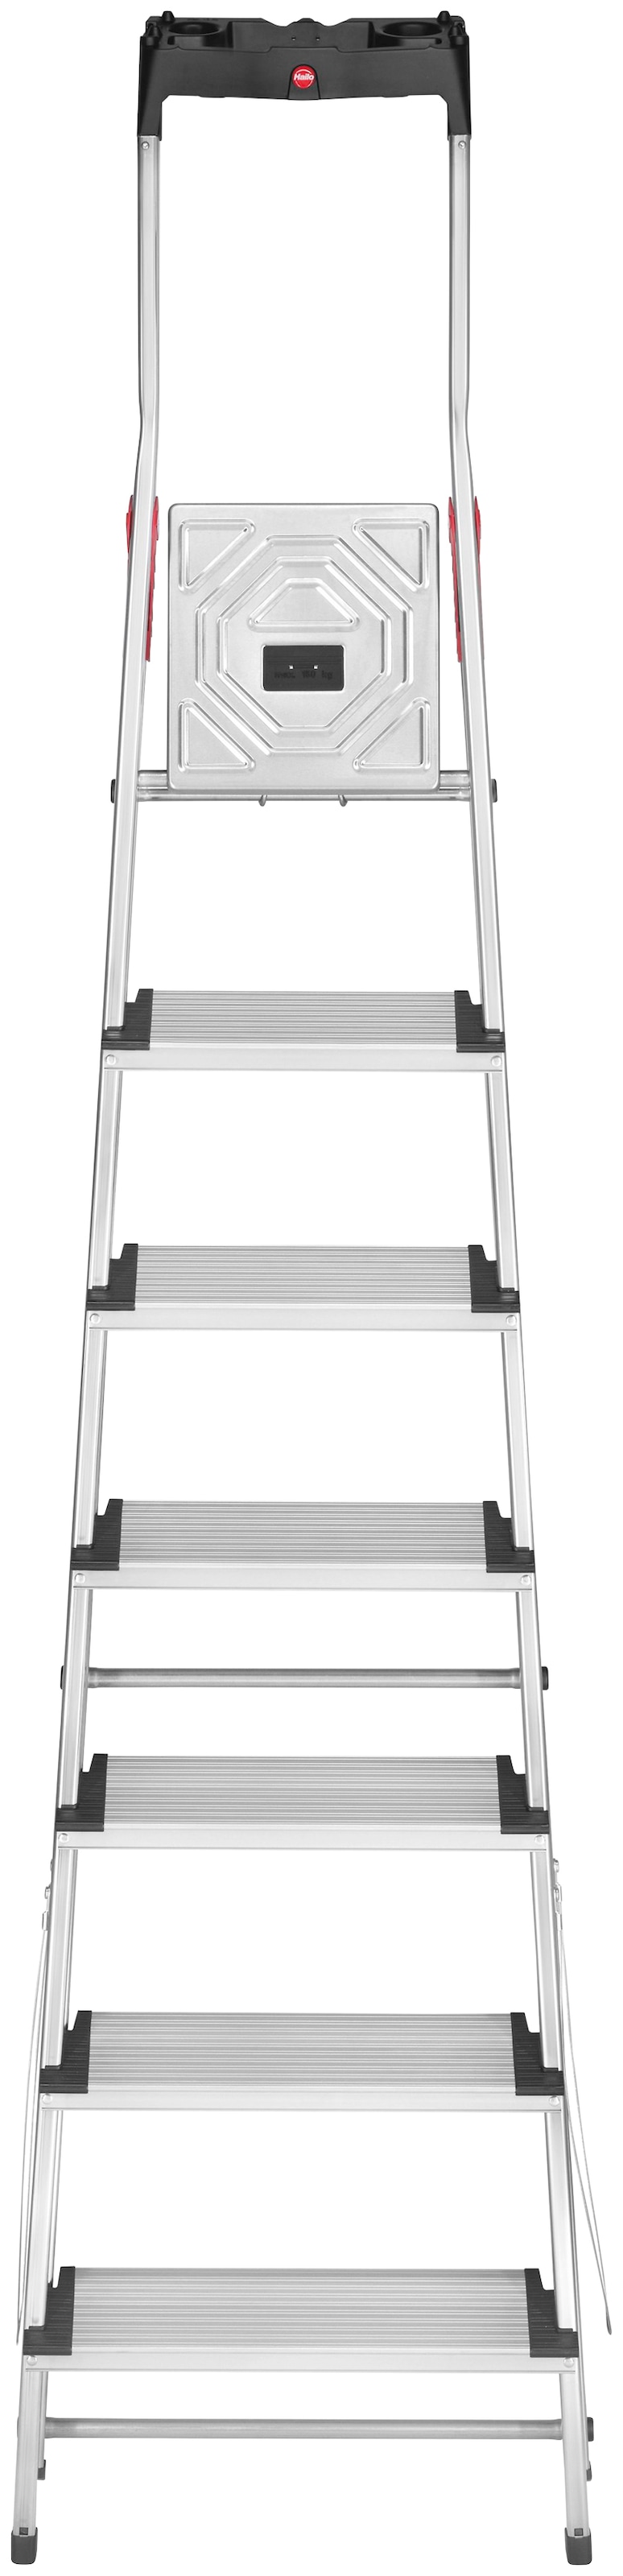 Hailo Stehleiter »L80 ComfortLine«, Alu-Sicherheits-Stehleiter 7 Stufen